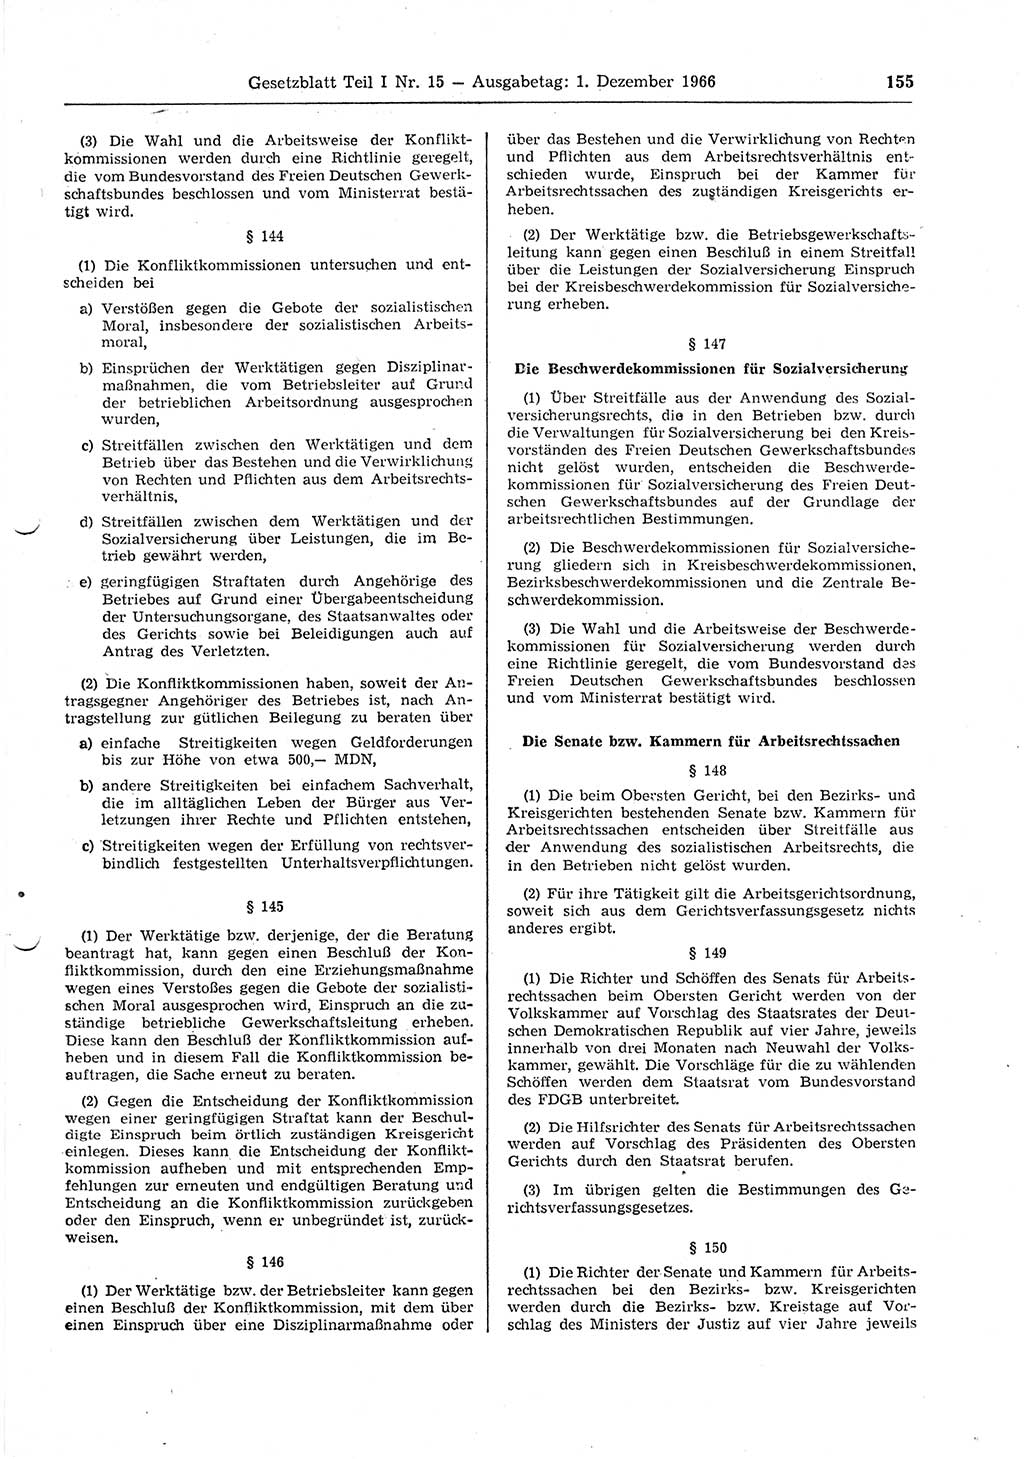 Gesetzblatt (GBl.) der Deutschen Demokratischen Republik (DDR) Teil Ⅰ 1966, Seite 155 (GBl. DDR Ⅰ 1966, S. 155)